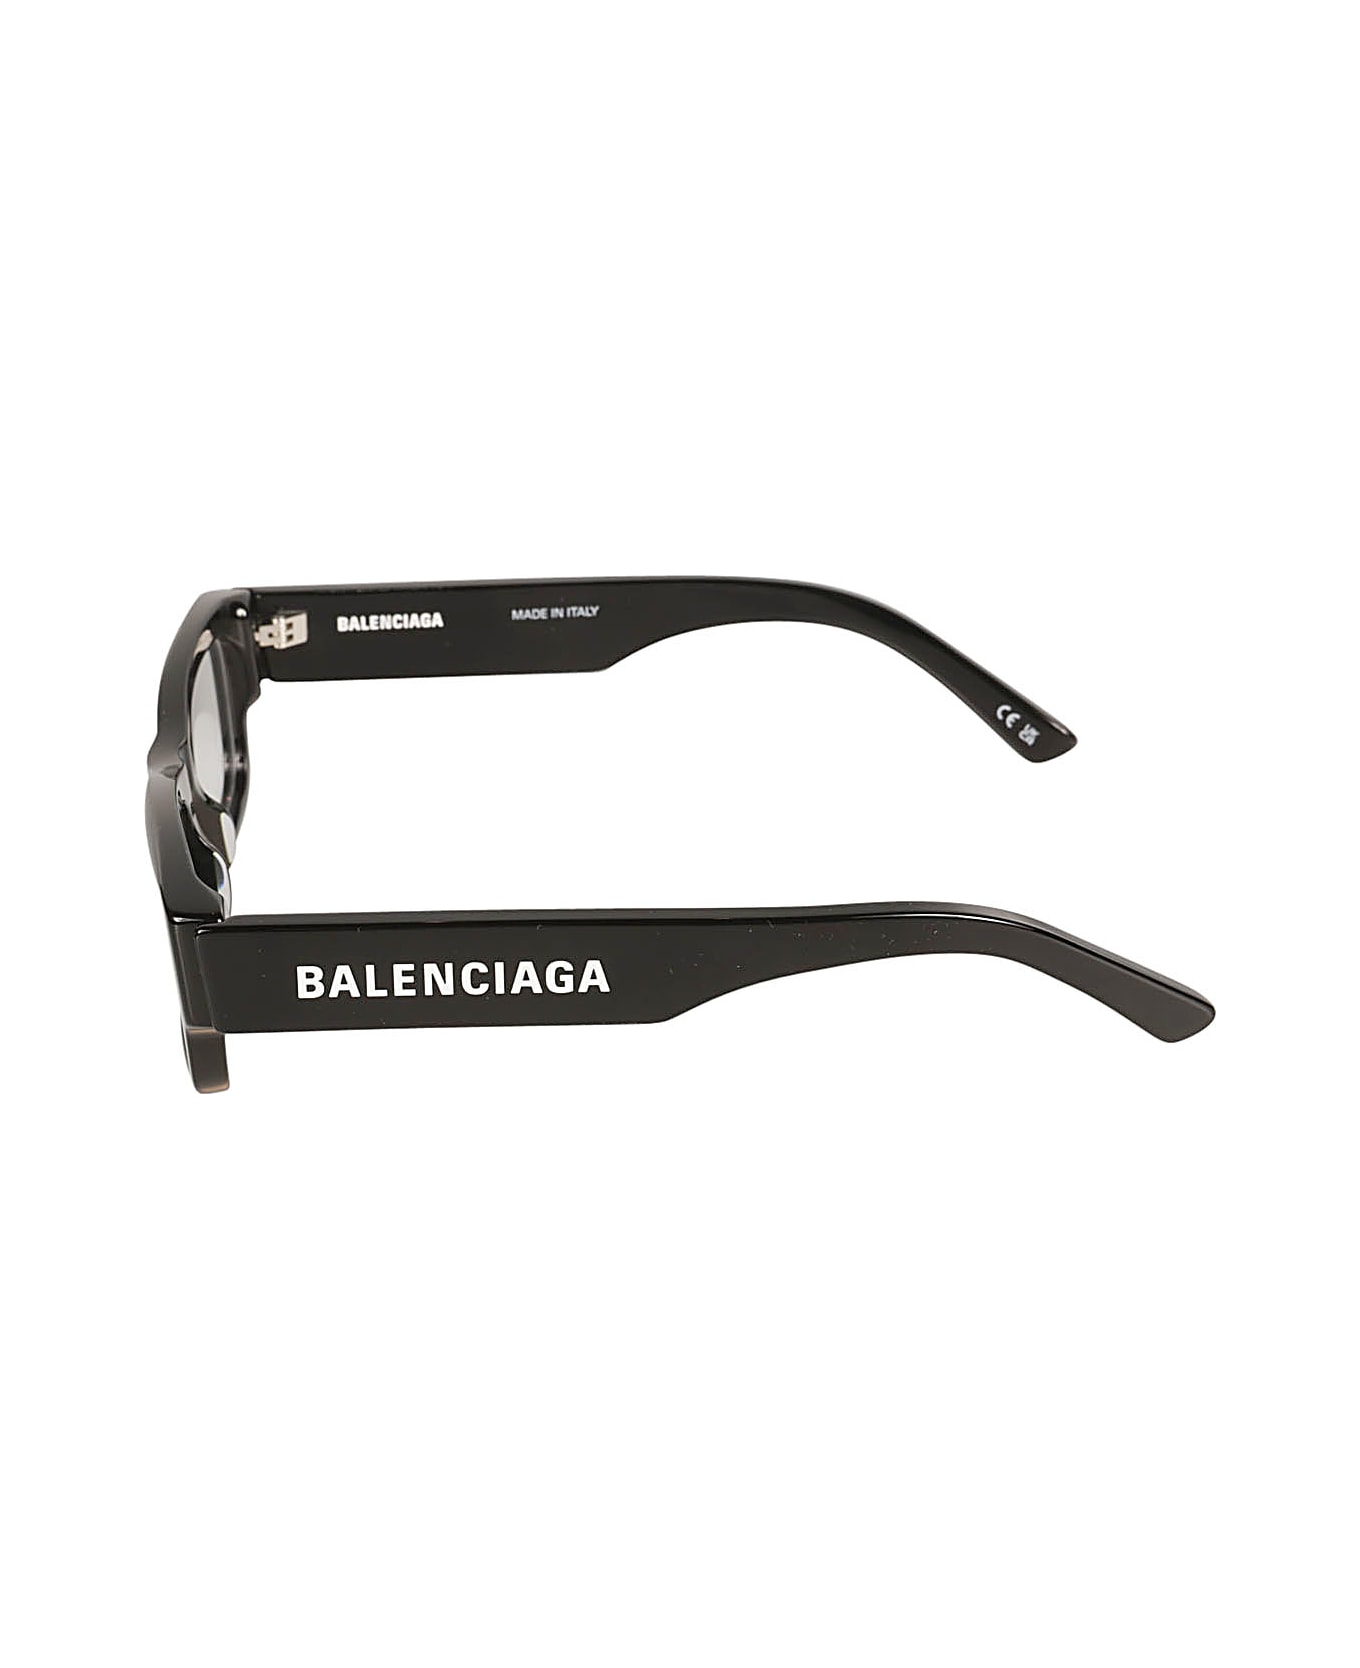 Balenciaga Eyewear Logo Sided Rectangular Frame Glasses - Black/Transparent アイウェア